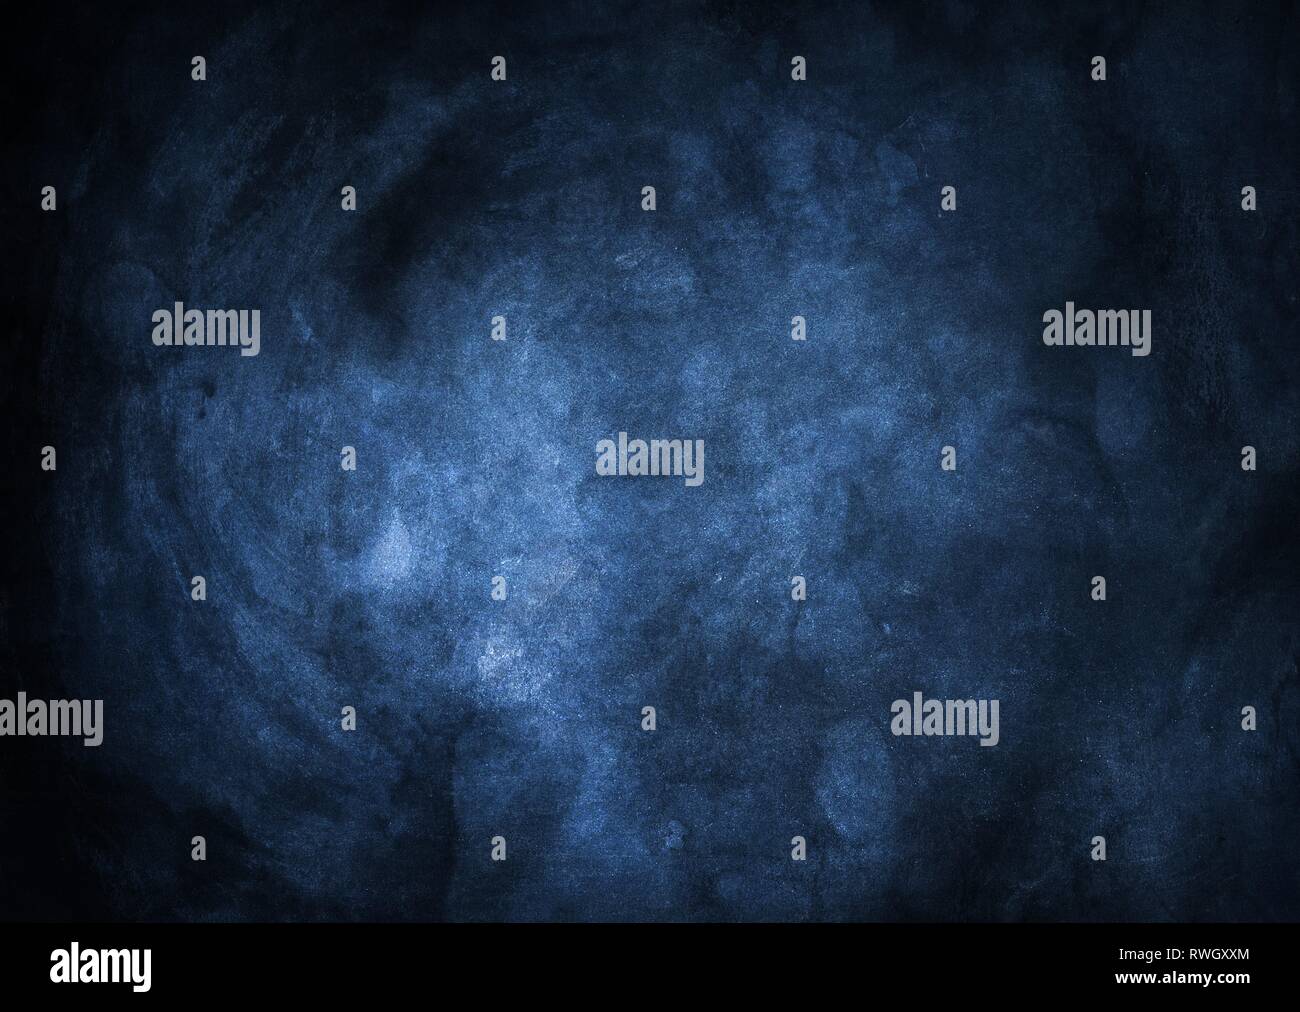 Blu scuro vignettato grunge sfondo con elementi incandescente al centro. Foto Stock